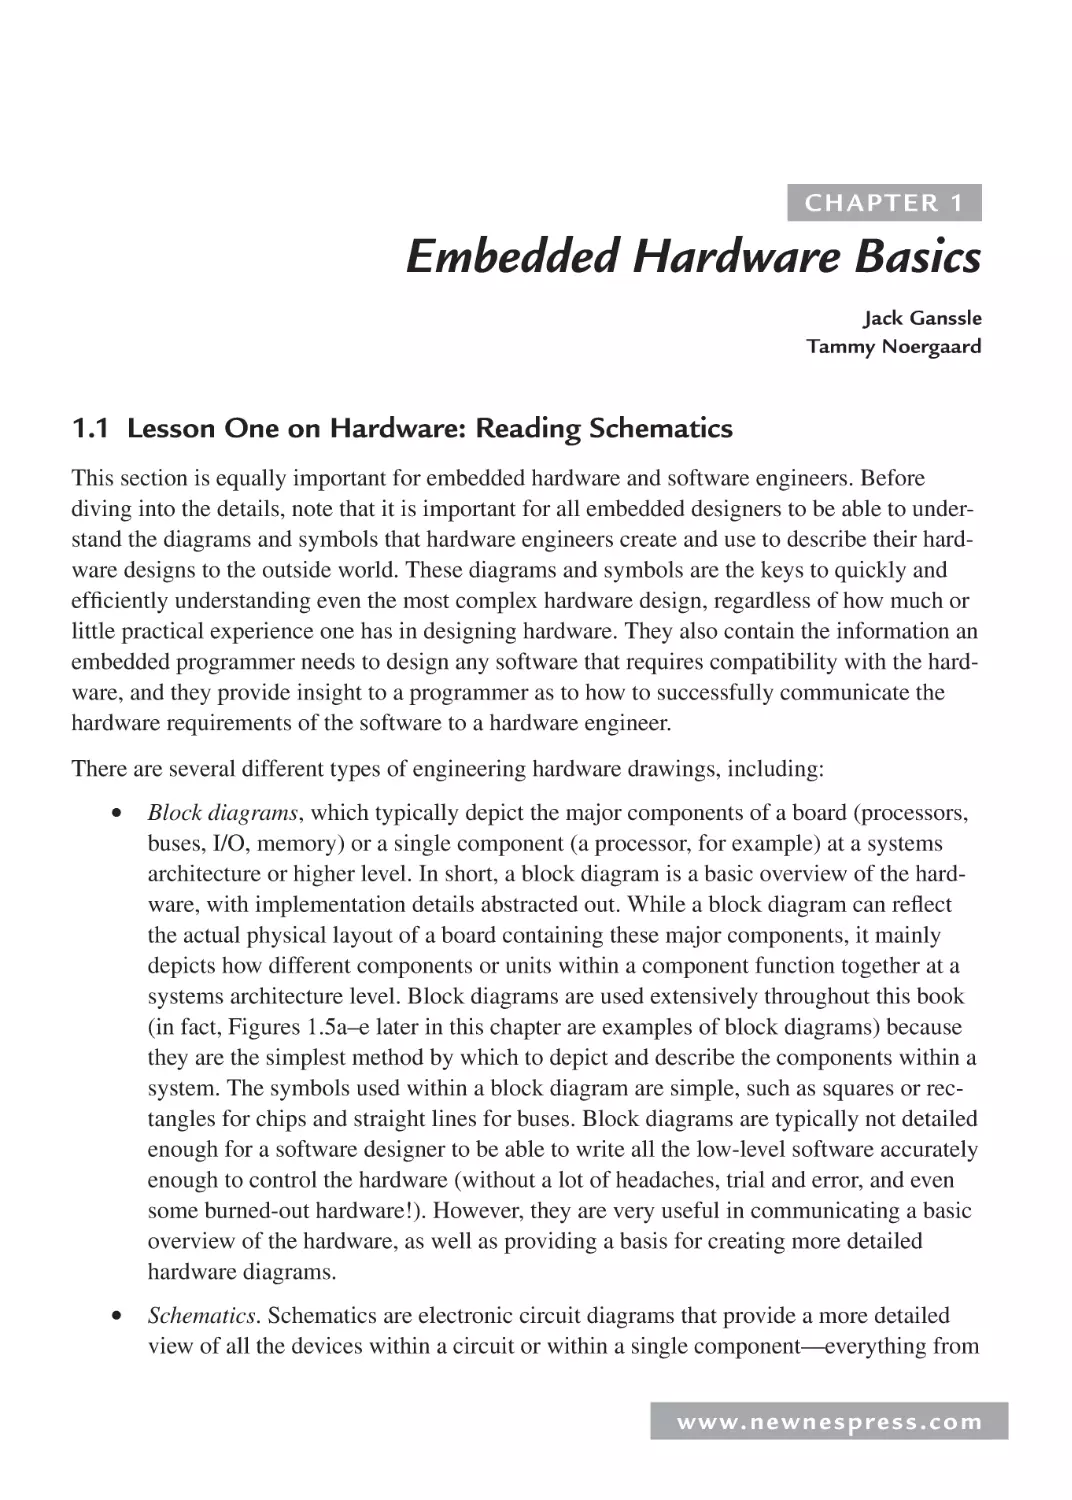 1 Embedded Hardware Basics
1.1 Lesson One on Hardware